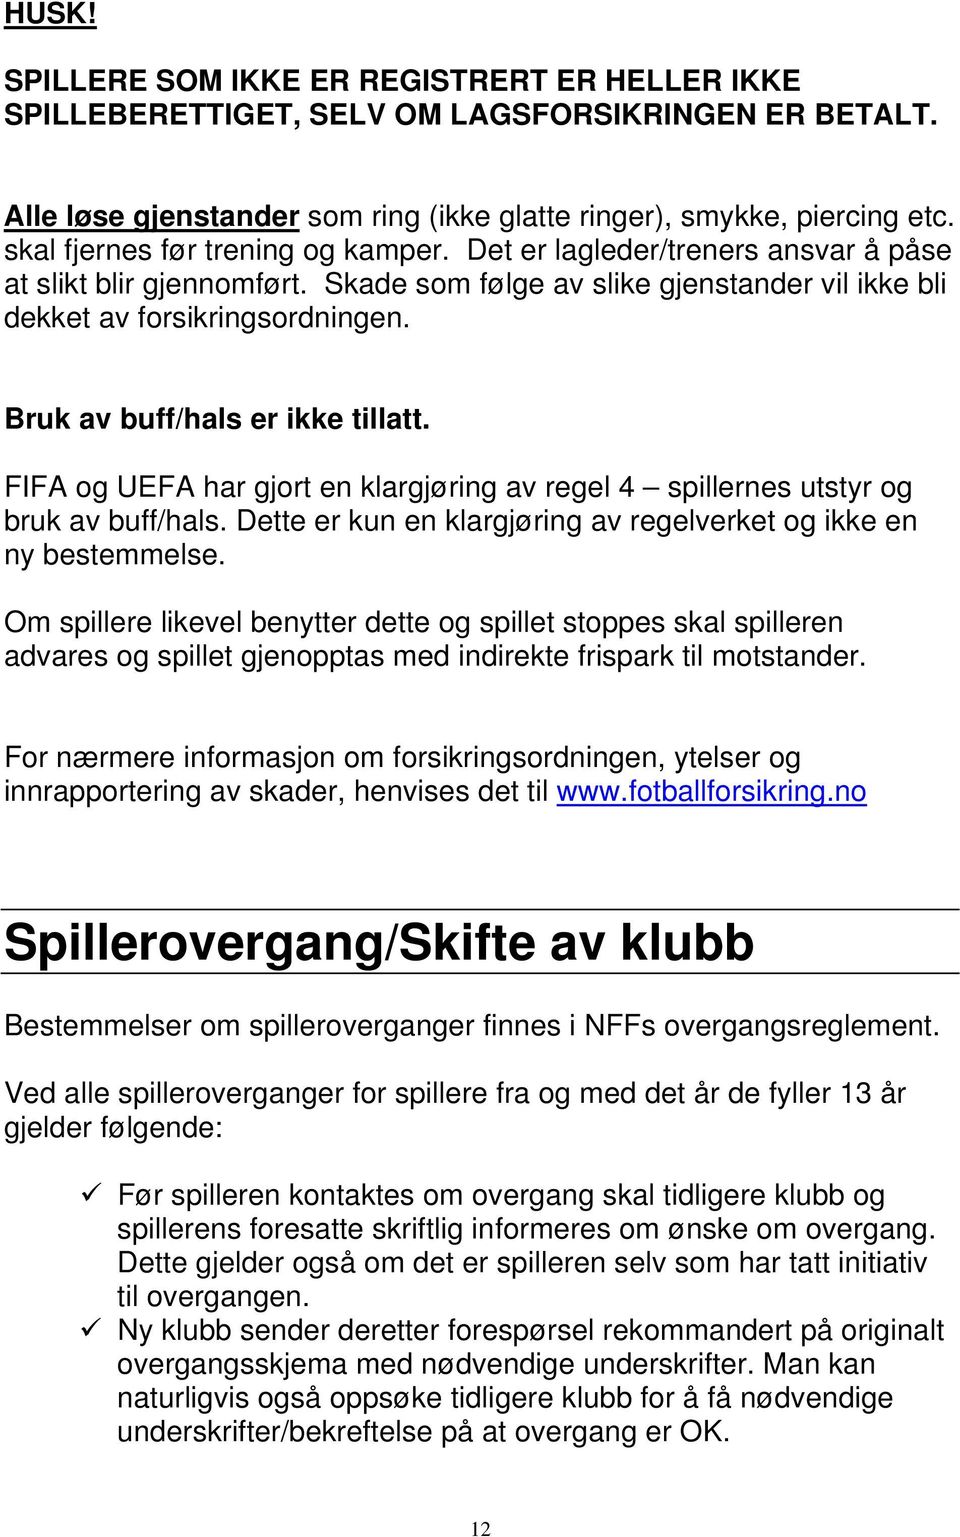 Bruk av buff/hals er ikke tillatt. FIFA og UEFA har gjort en klargjøring av regel 4 spillernes utstyr og bruk av buff/hals. Dette er kun en klargjøring av regelverket og ikke en ny bestemmelse.